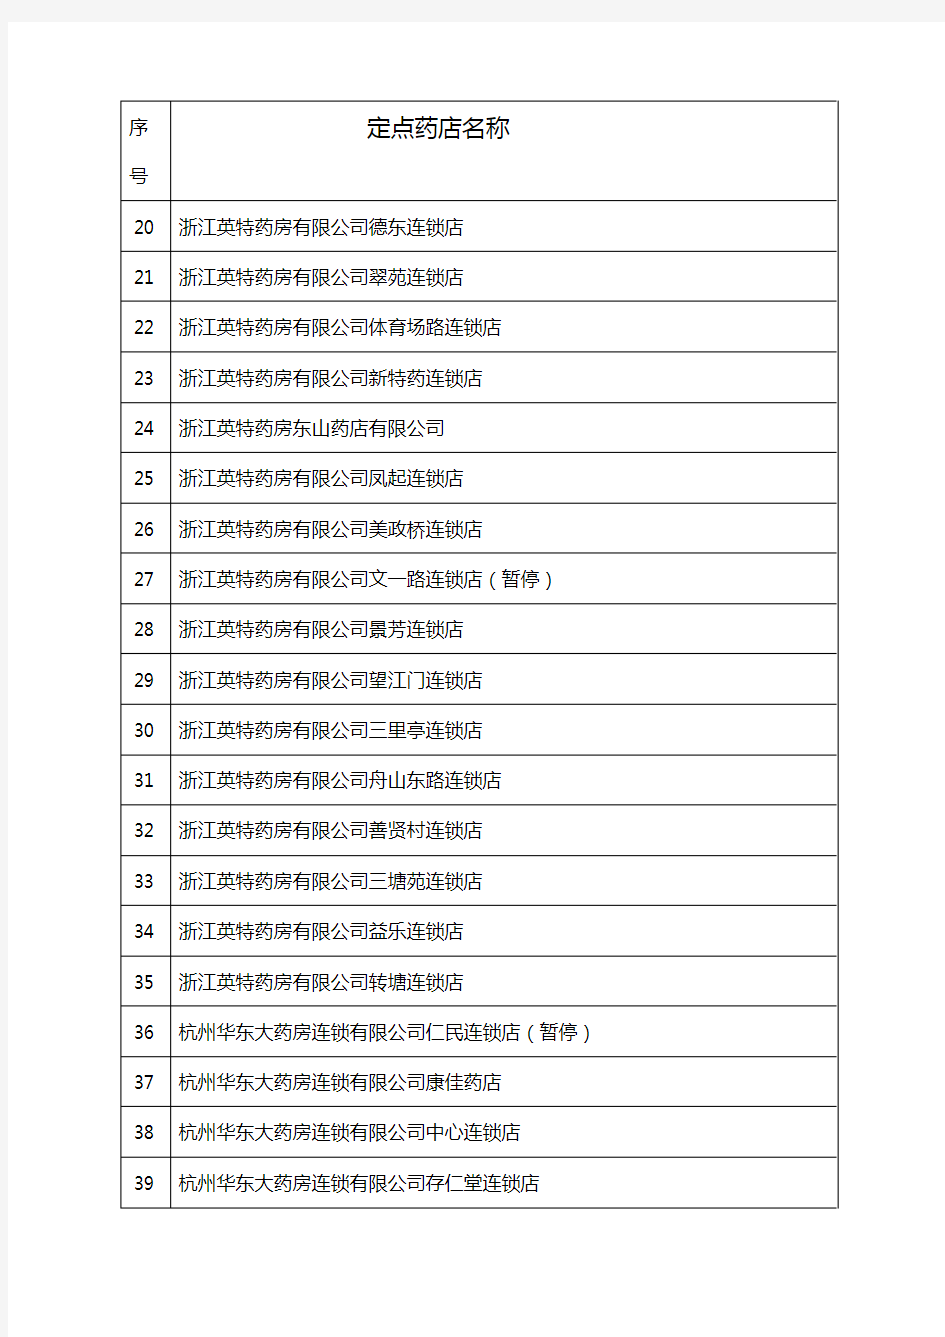 【医疗药品管理】杭州市本级基本医疗保险定点零售药店名单